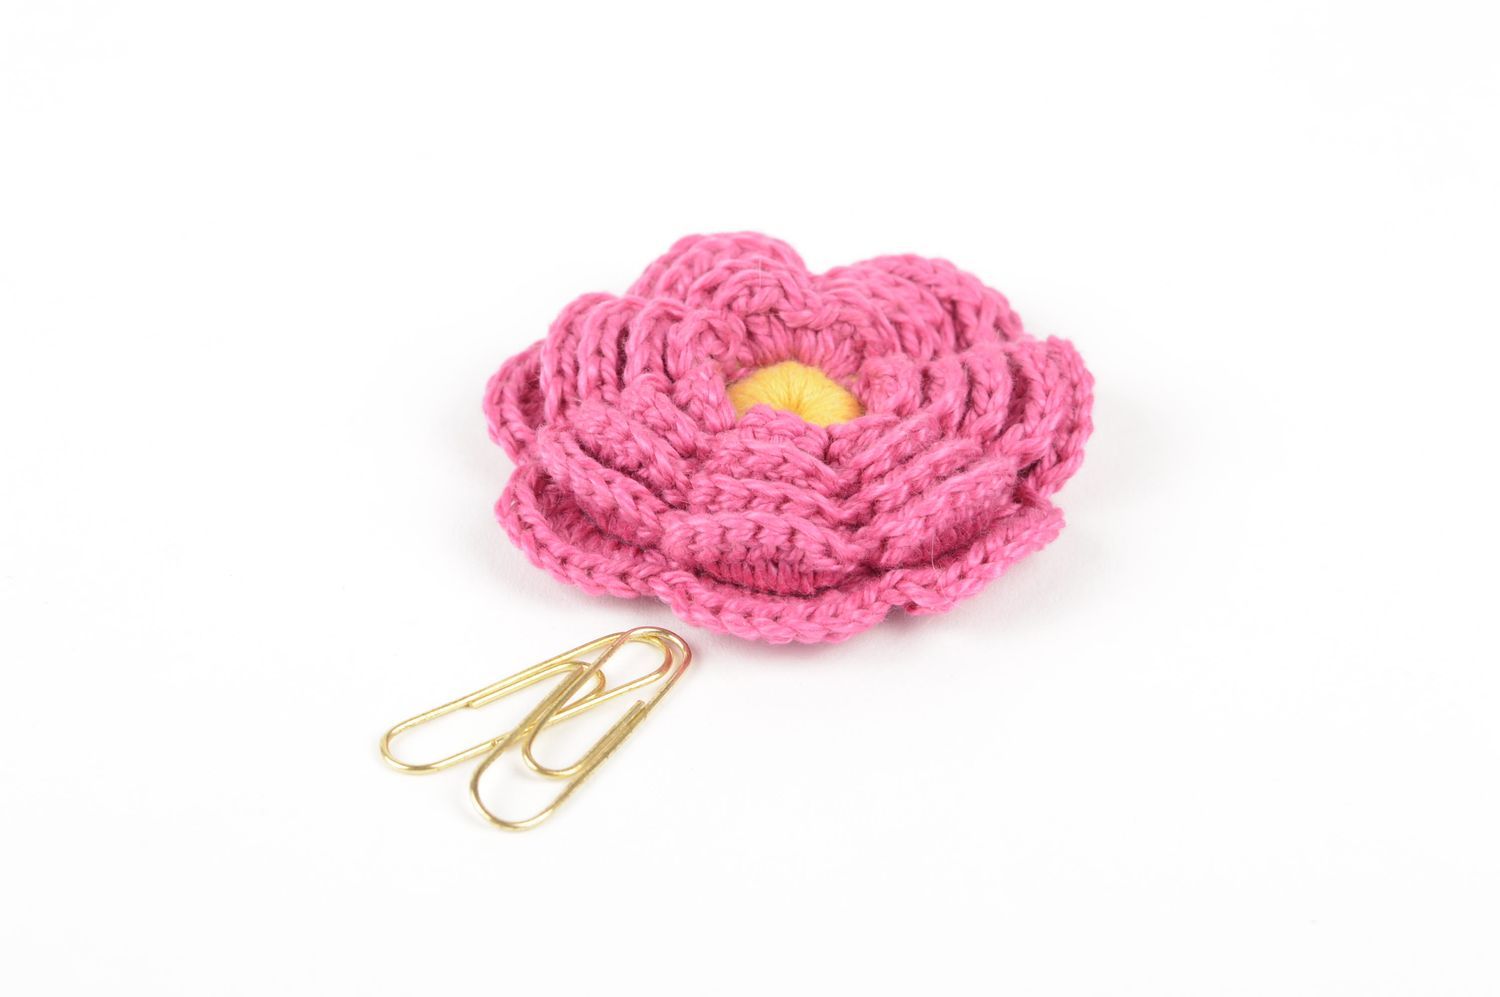 Unusual handmade crochet flower jewelry making supplies artisan jewelry photo 5